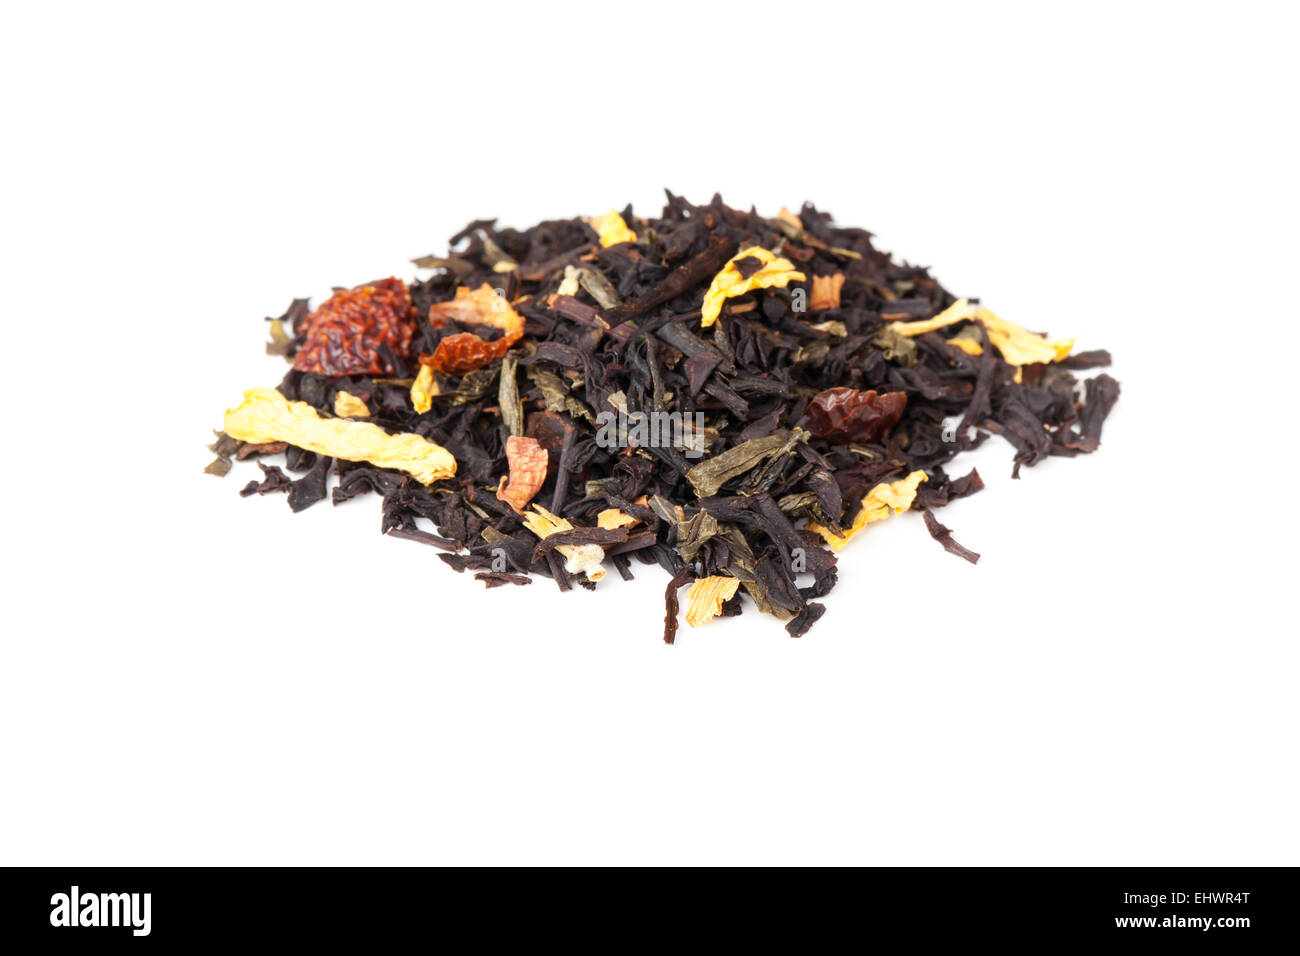 Haufen von gemischten schwarzer und grüner Tee mit trockenen Hagebutte Beeren, Ringelblume, Sonnenblume Blütenblätter isoliert auf weißem Hintergrund Stockfoto